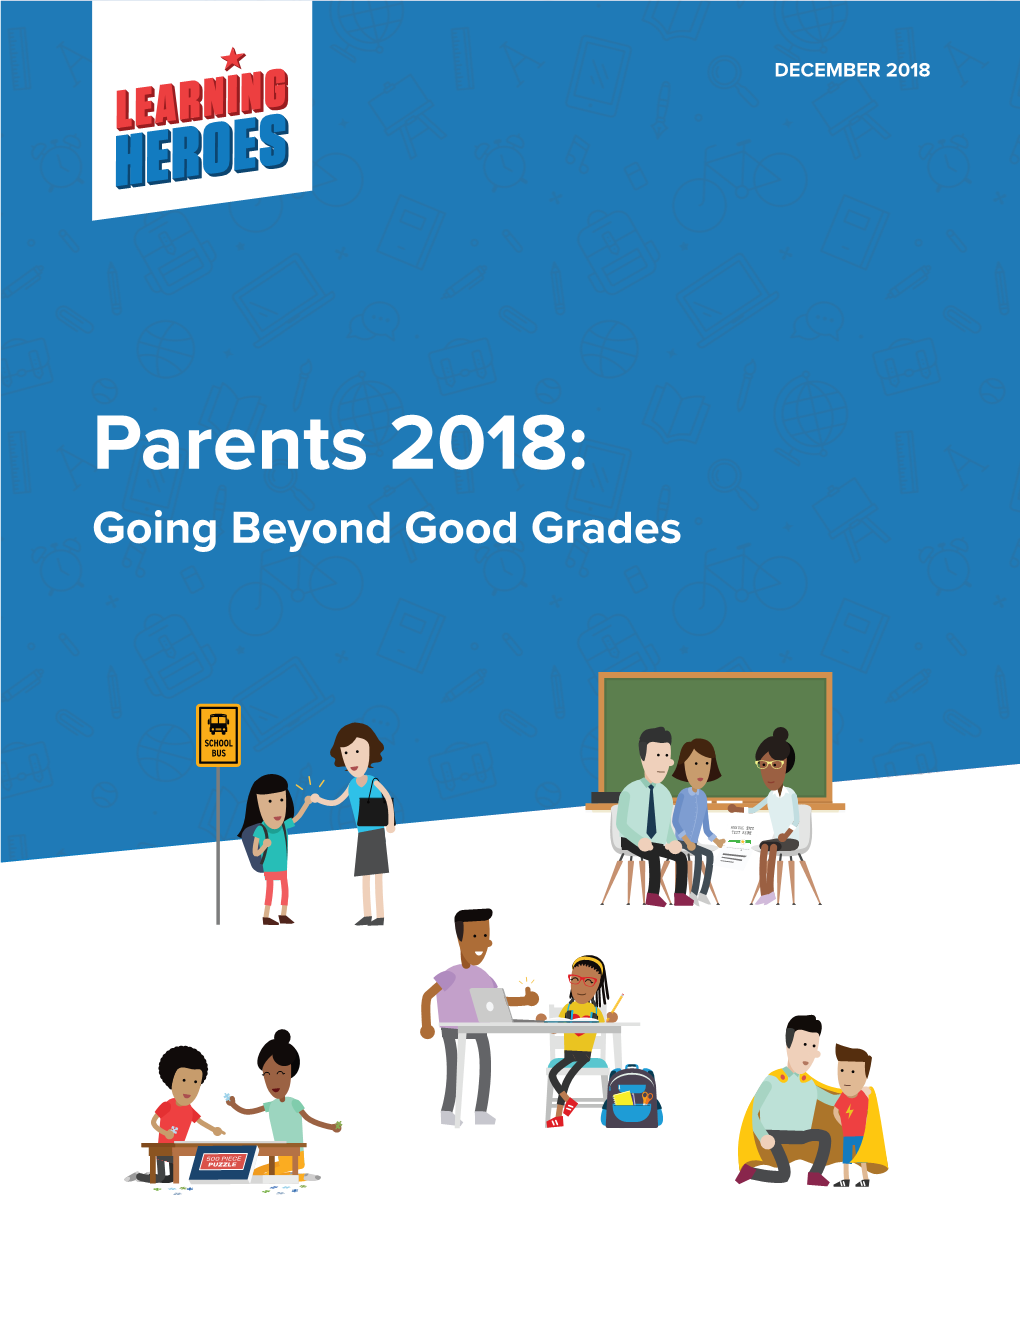 Parents 2018: Going Beyond Good Grades